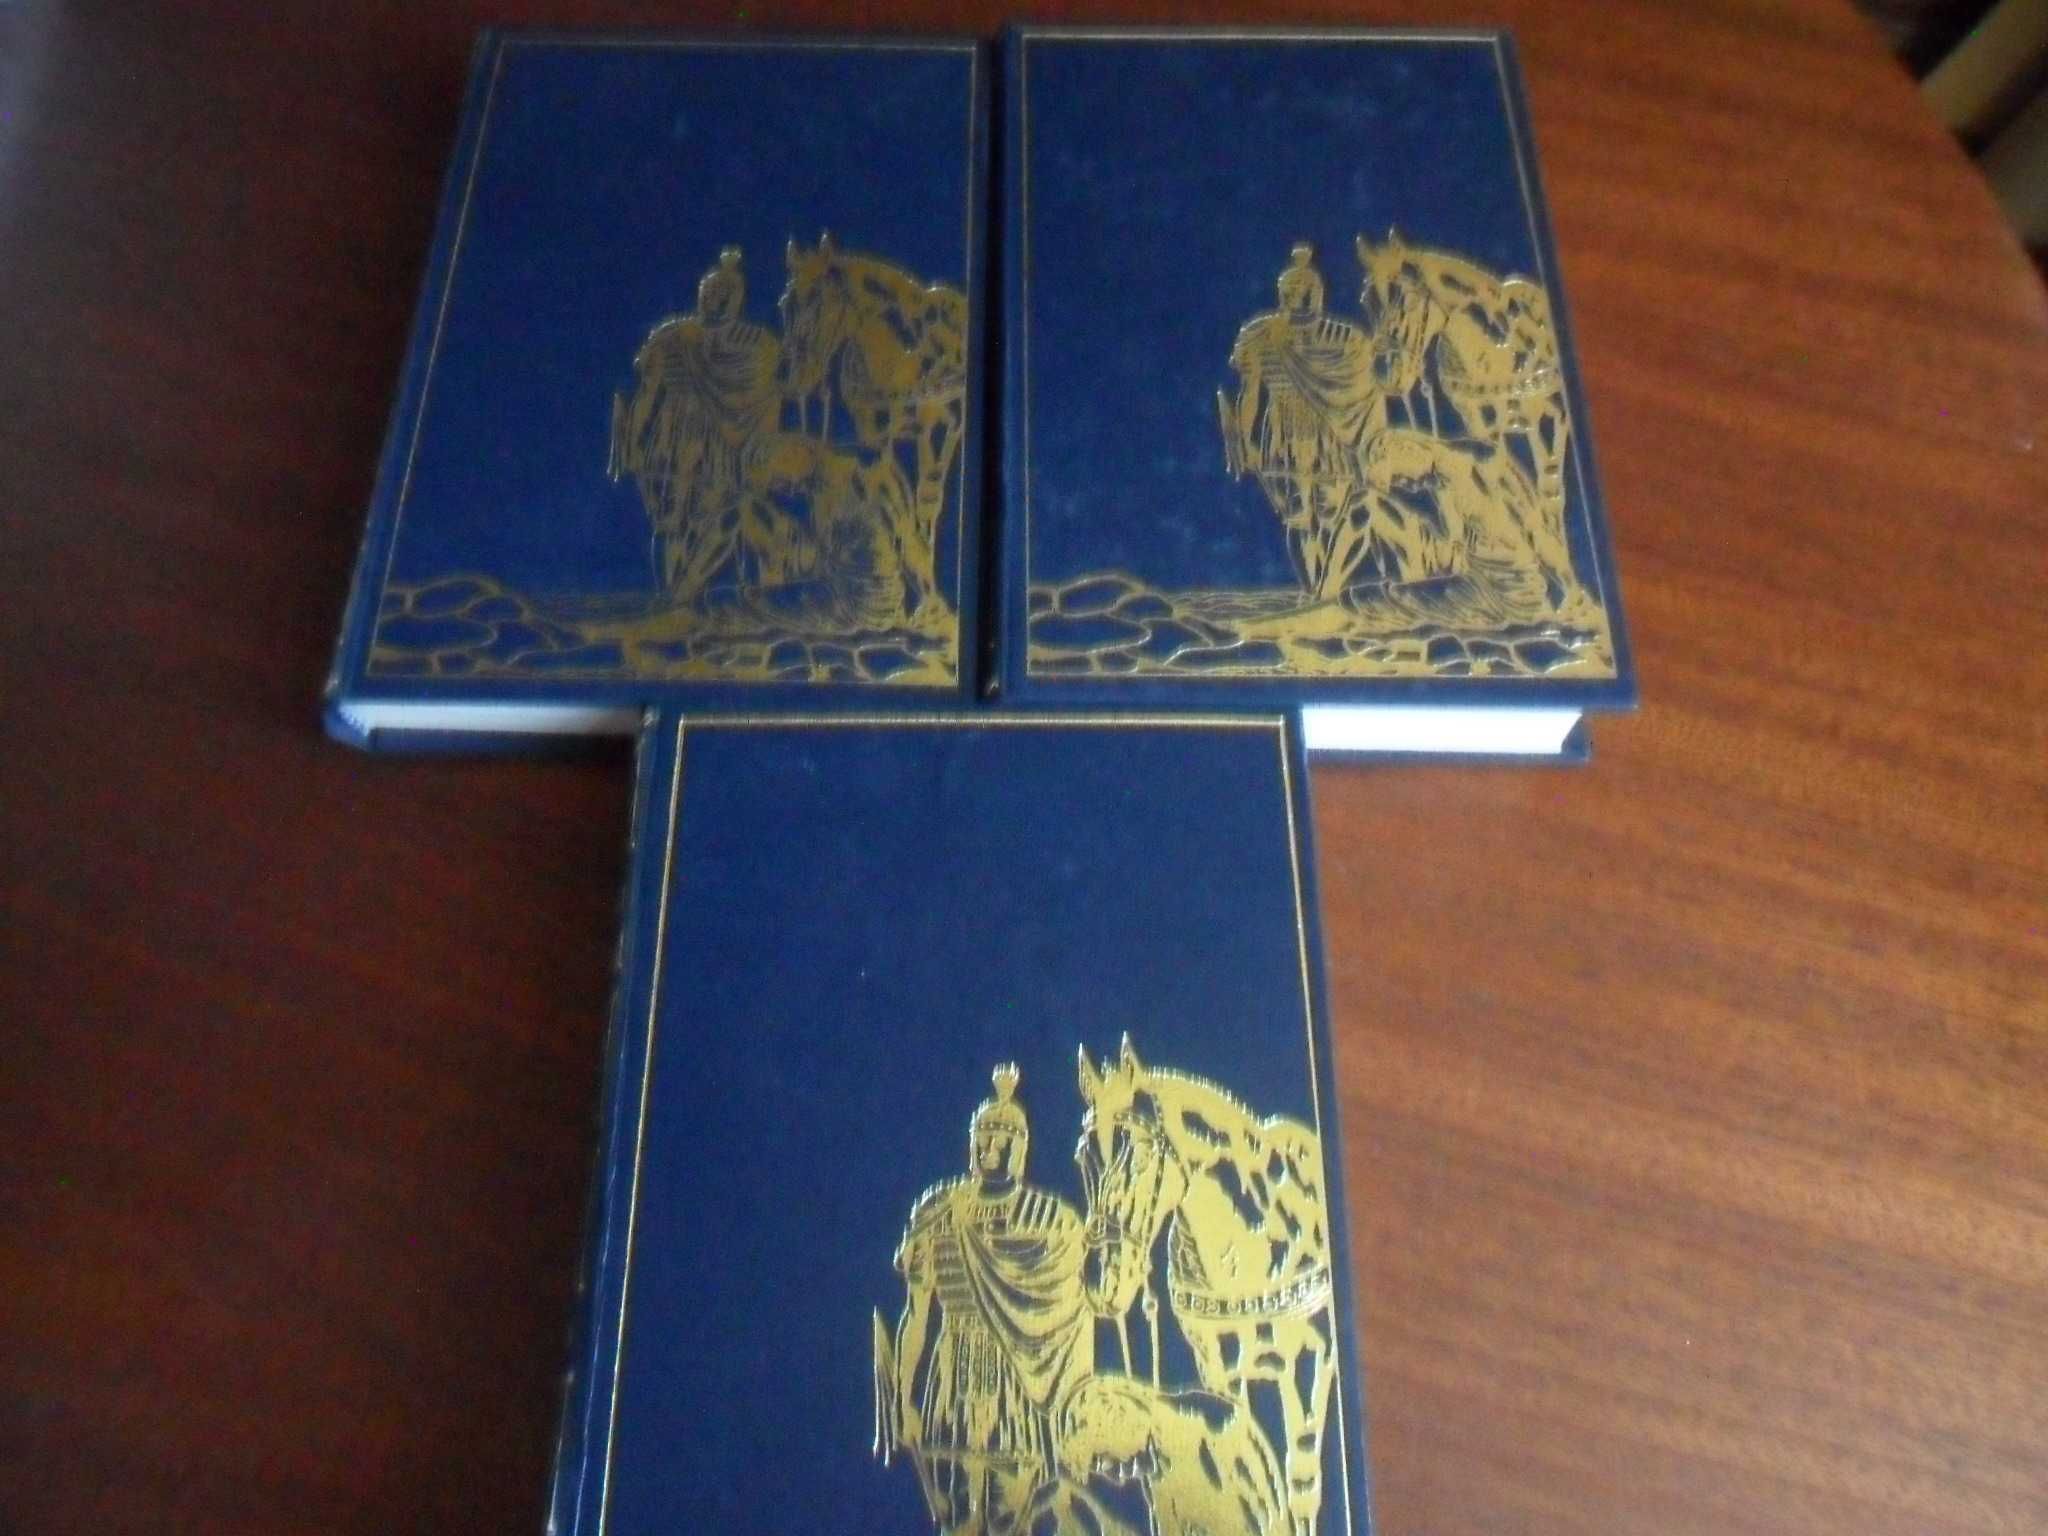 "História Universal" de H. G. Wells – 3 Volumes - Obra Completa